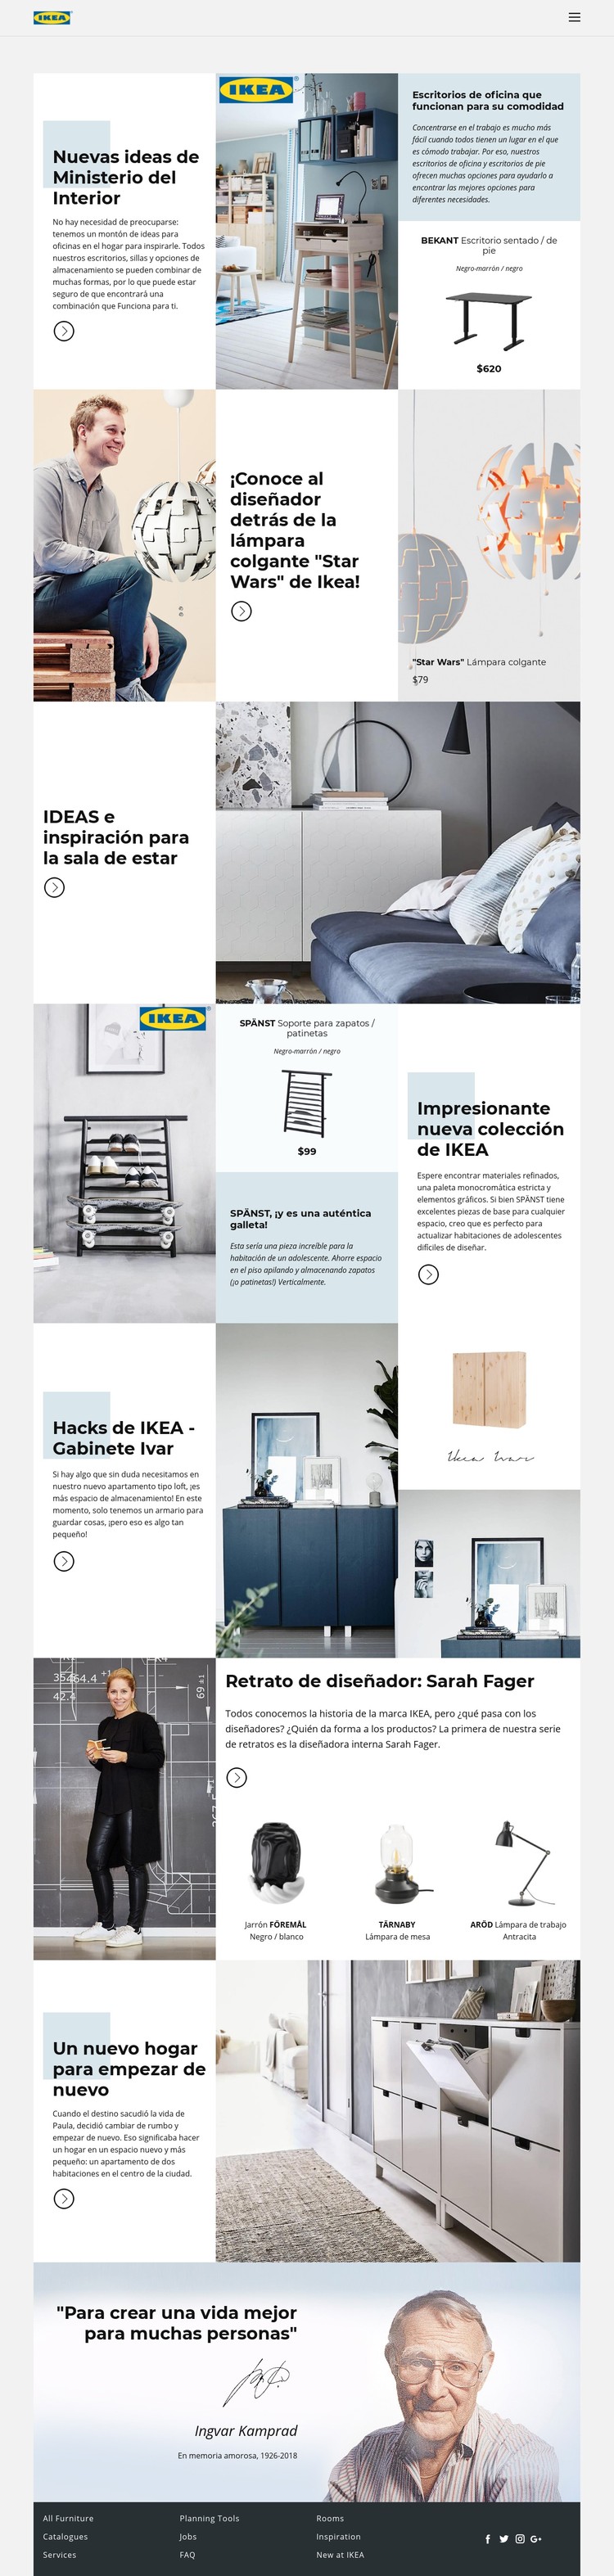 Inspiración de IKEA Plantilla CSS